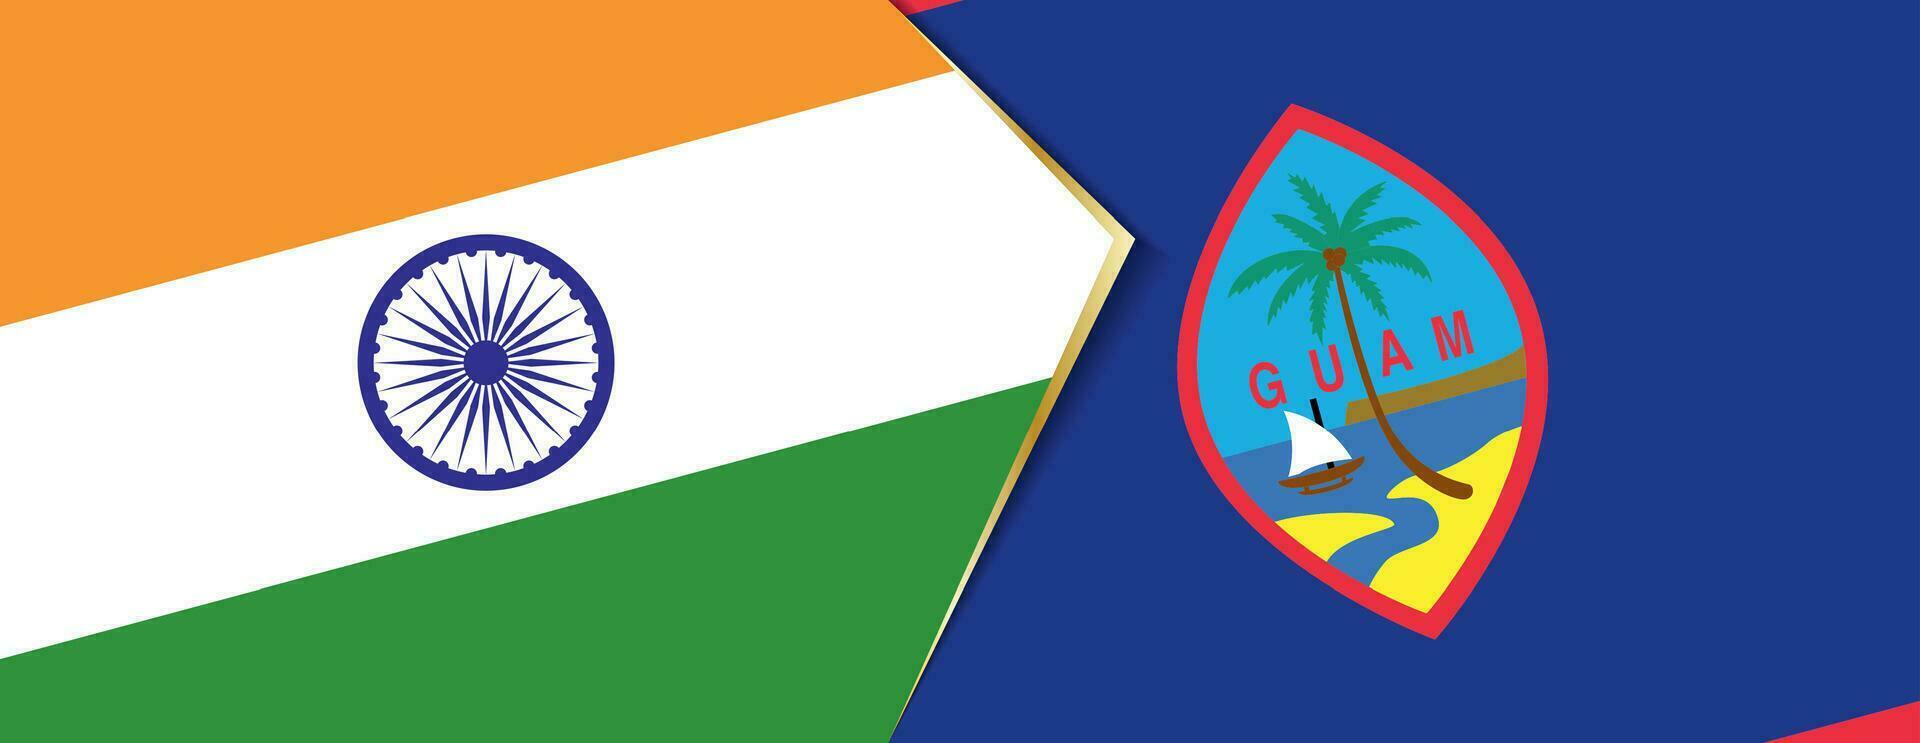 India e Guami bandiere, Due vettore bandiere.